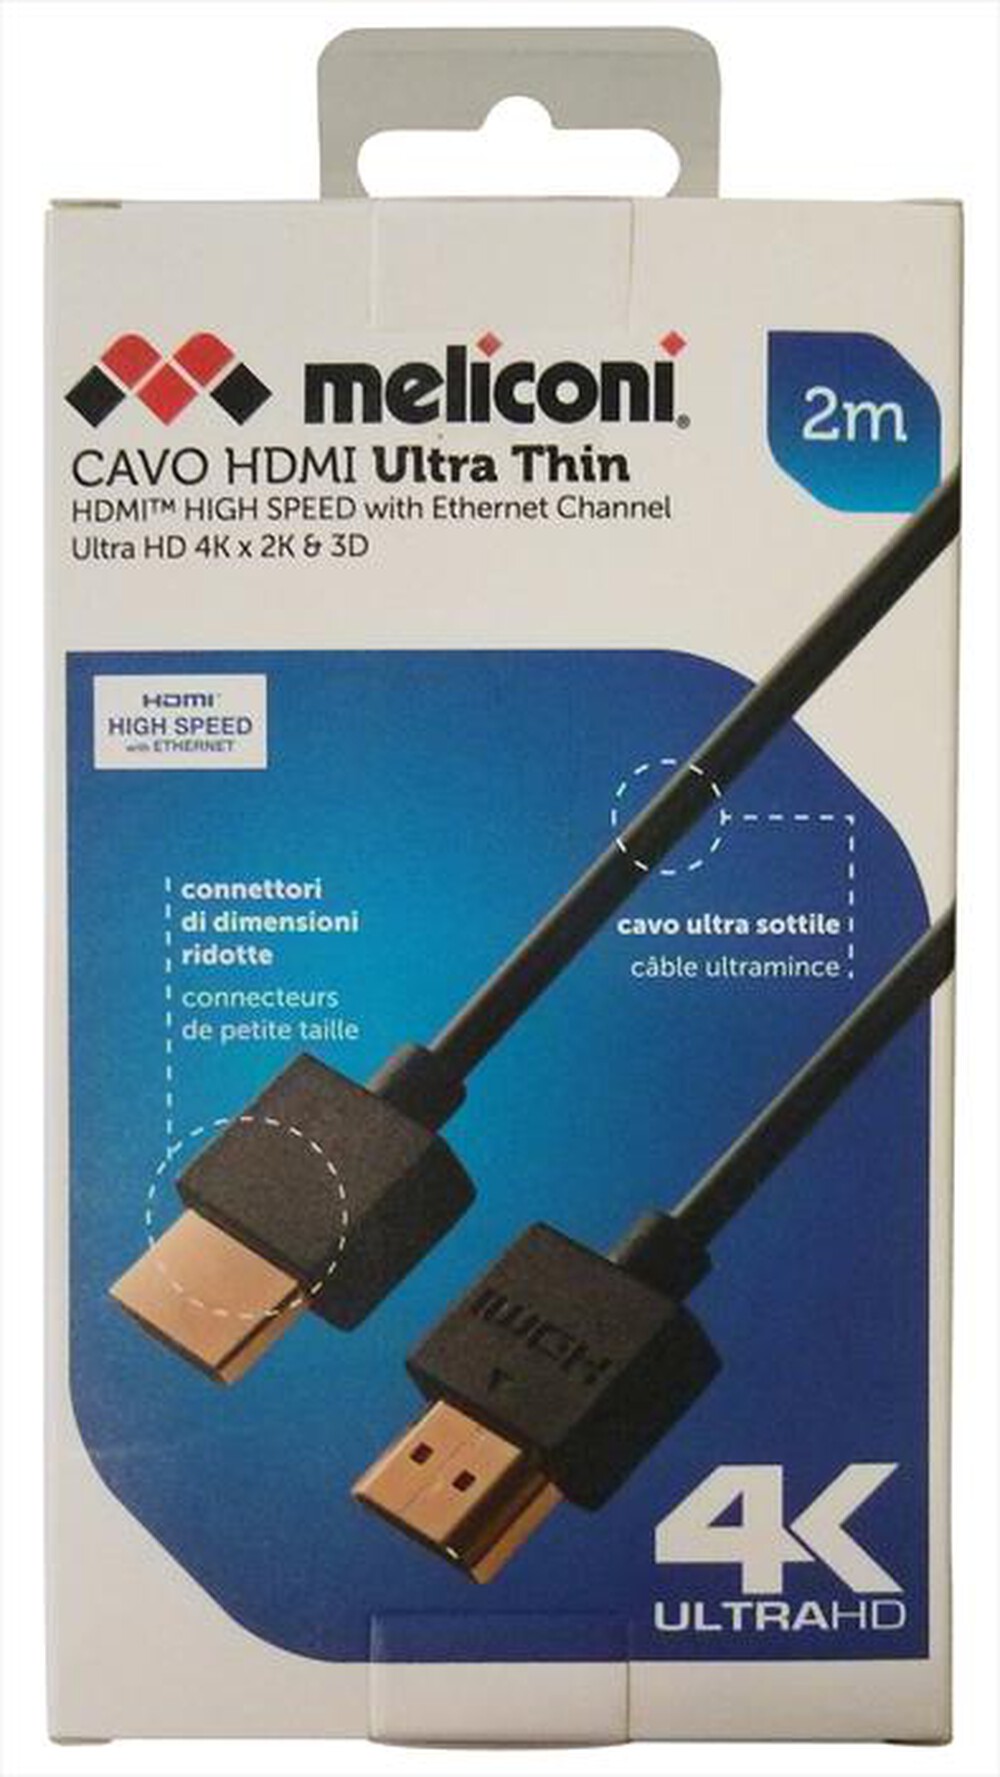 "MELICONI - HDMI ULTRA THIN 2 M - Nero"